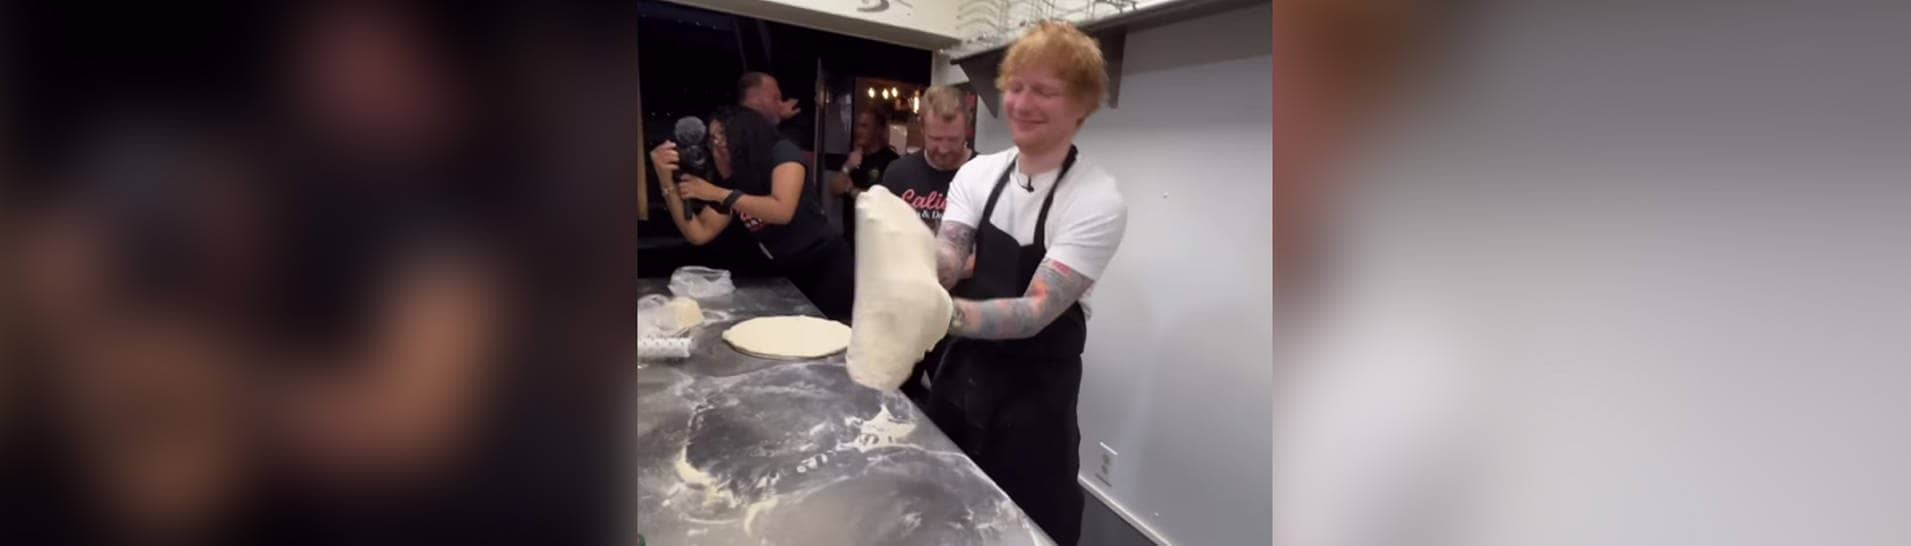 Ed Sheeran beim Pizzateig wirbeln